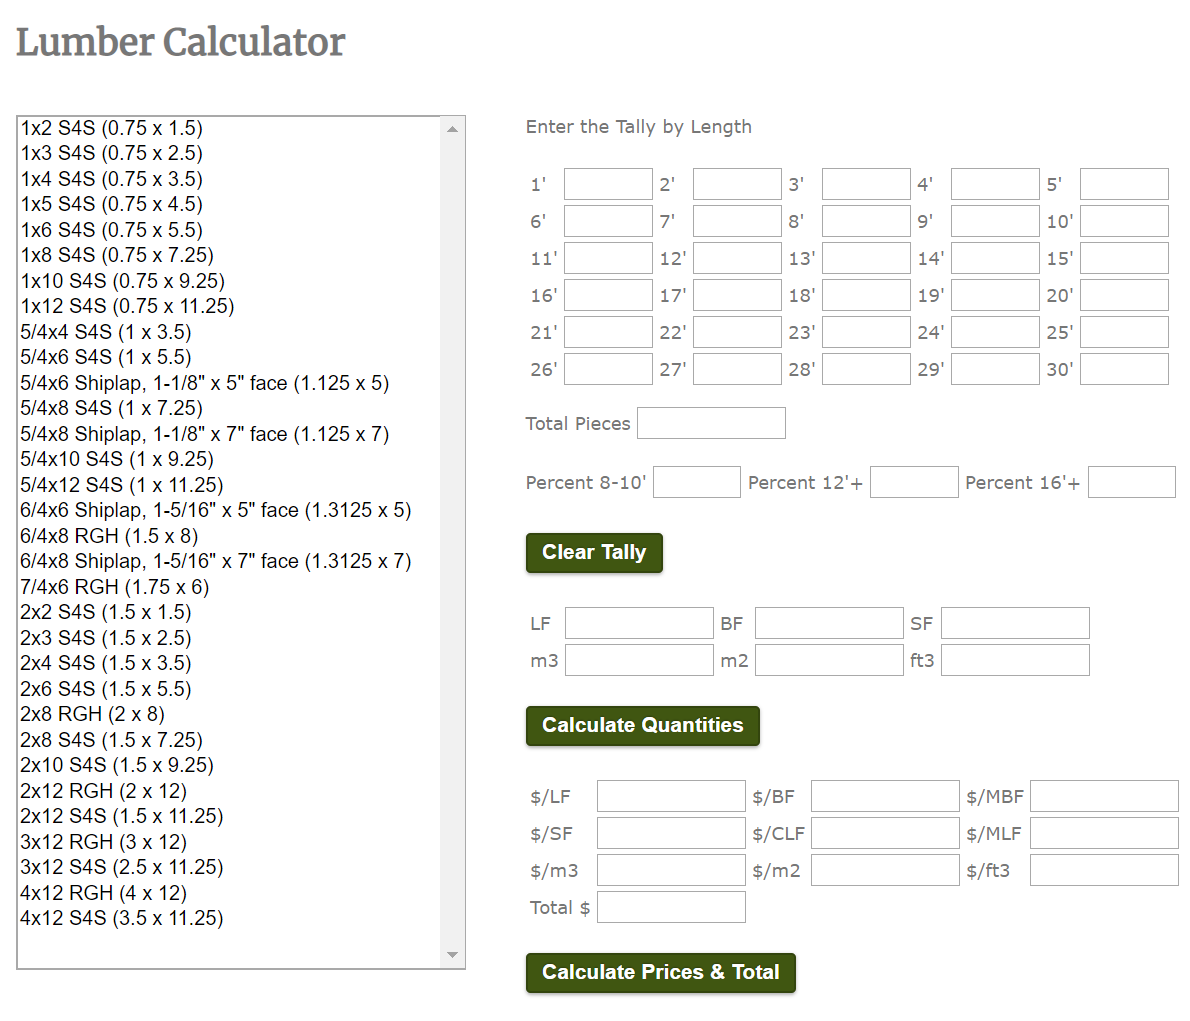 LumberIQ - Lumber Calculator